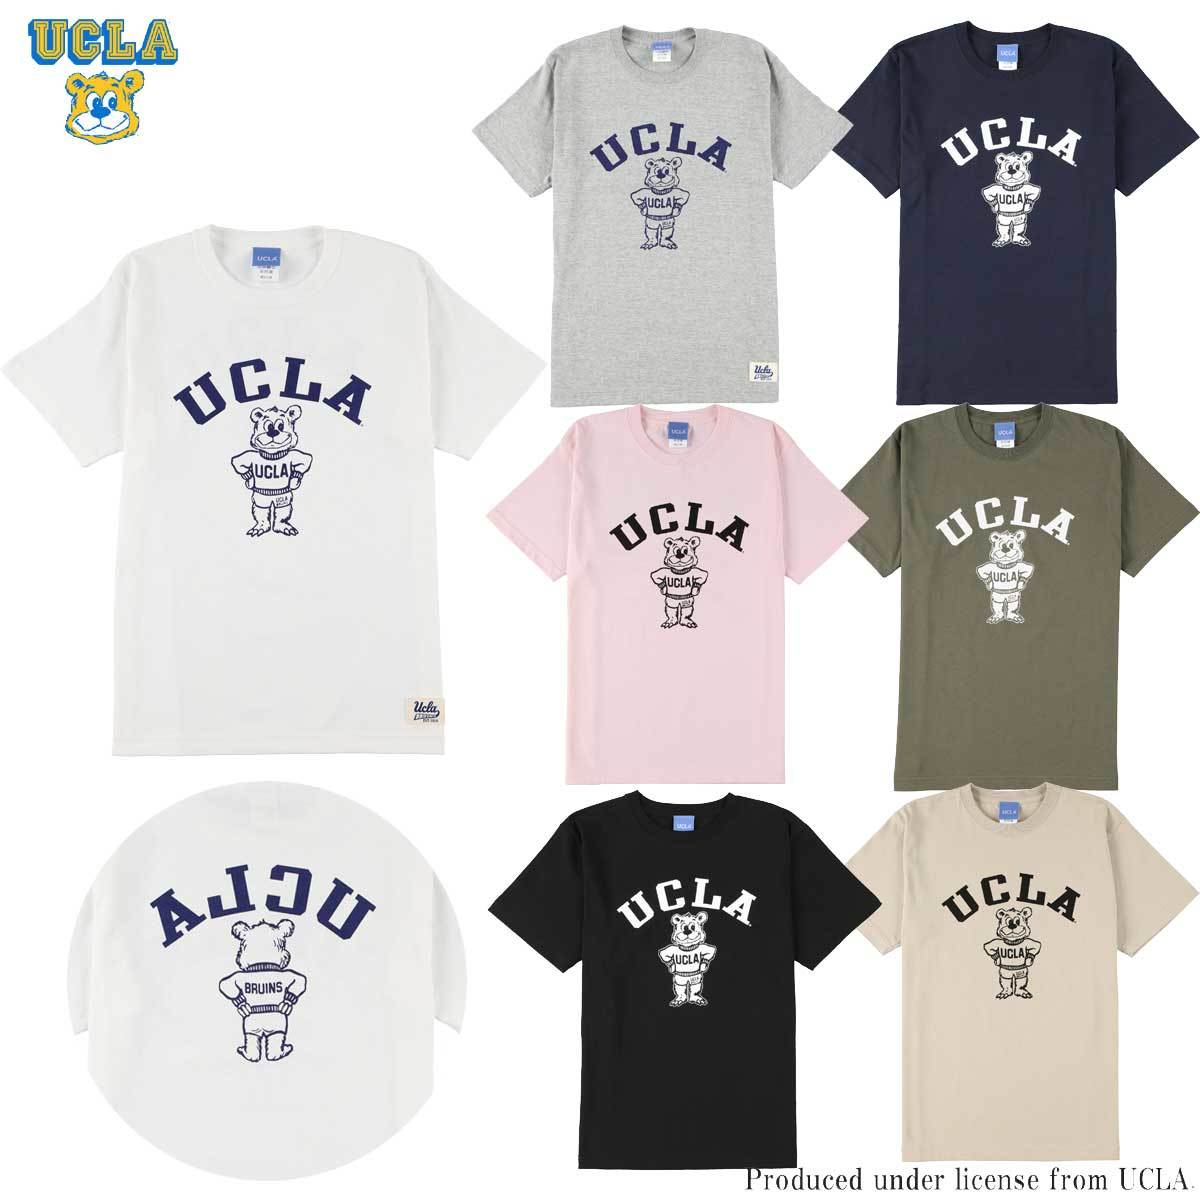 送料無料 UCLA ユーシーエルエー Tシャツ メンズ レディース UCLA-0436 6.2oz ヘビーウエイト カレッジ 買収 アメカジ オープンエンドTシャツ 出色 ベア キャラクター ロゴ